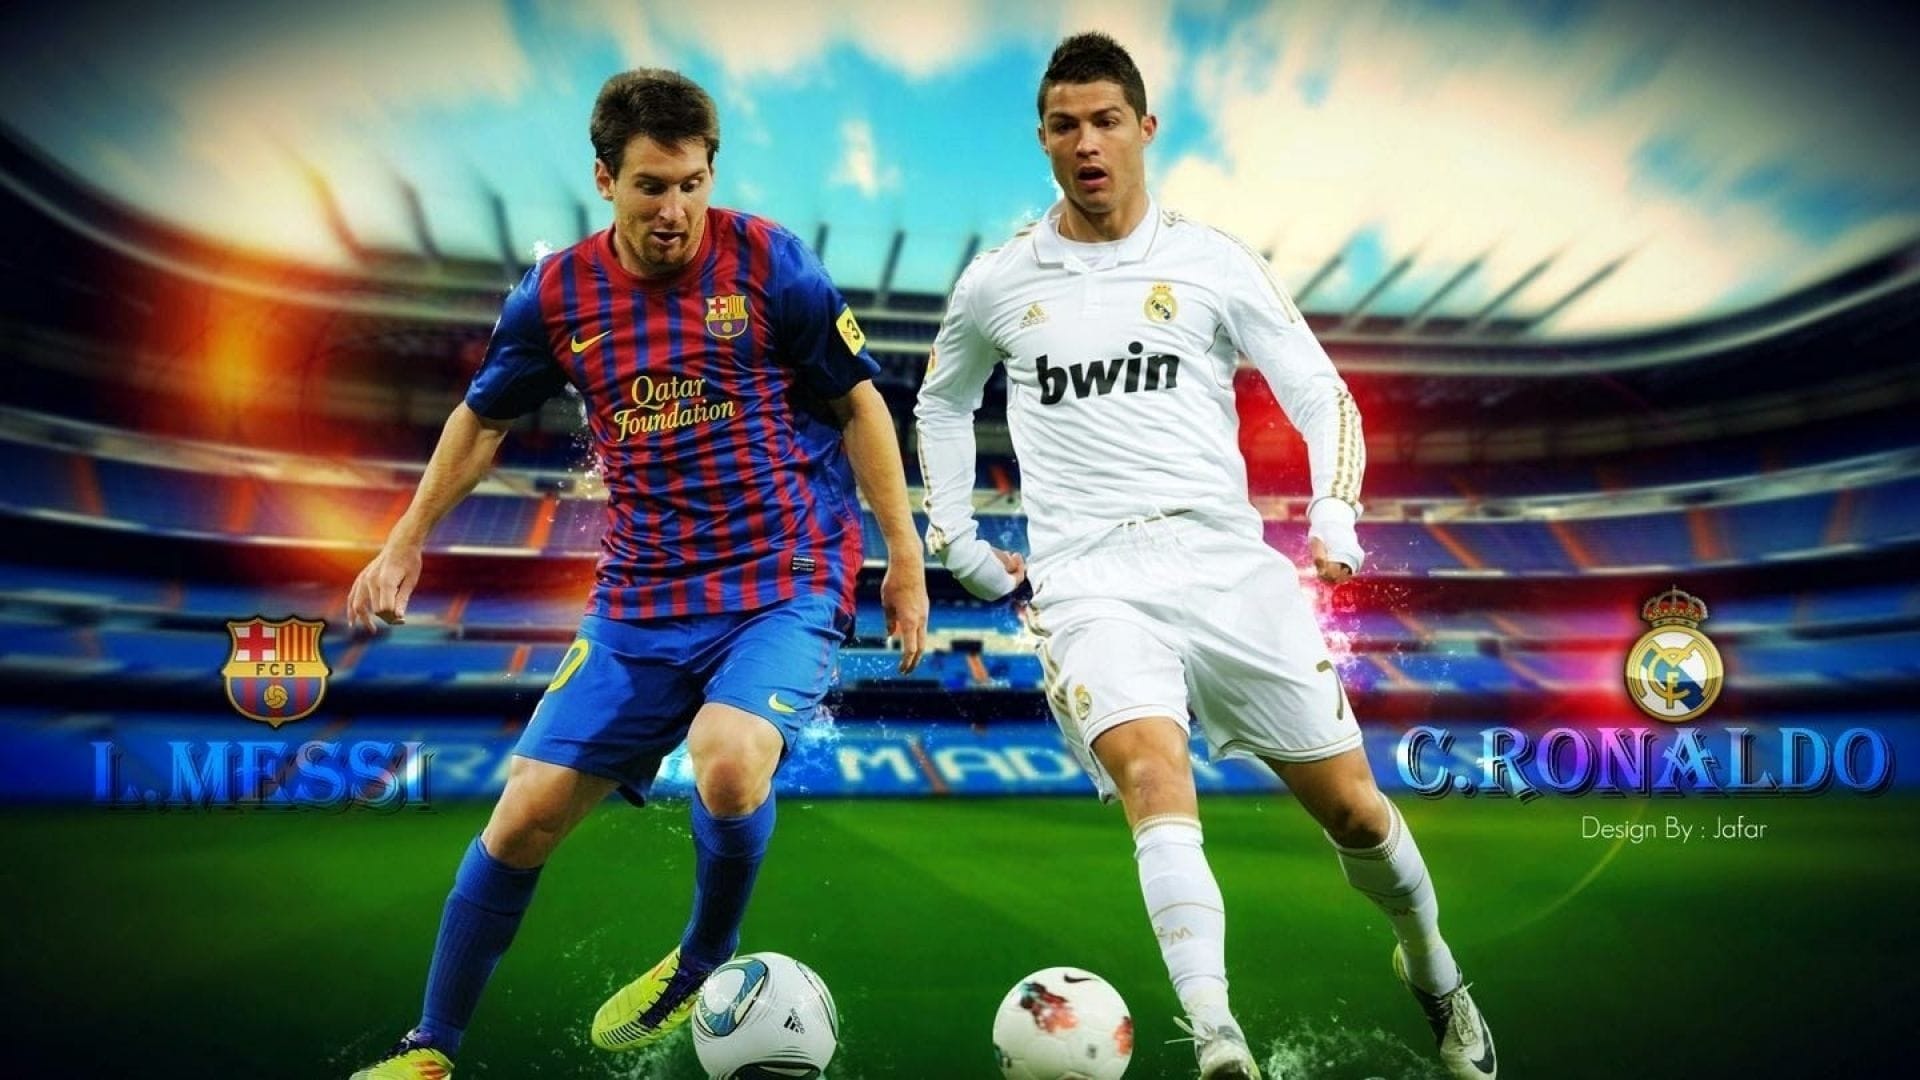 Ronaldo vs. Messi: Face Off! - film